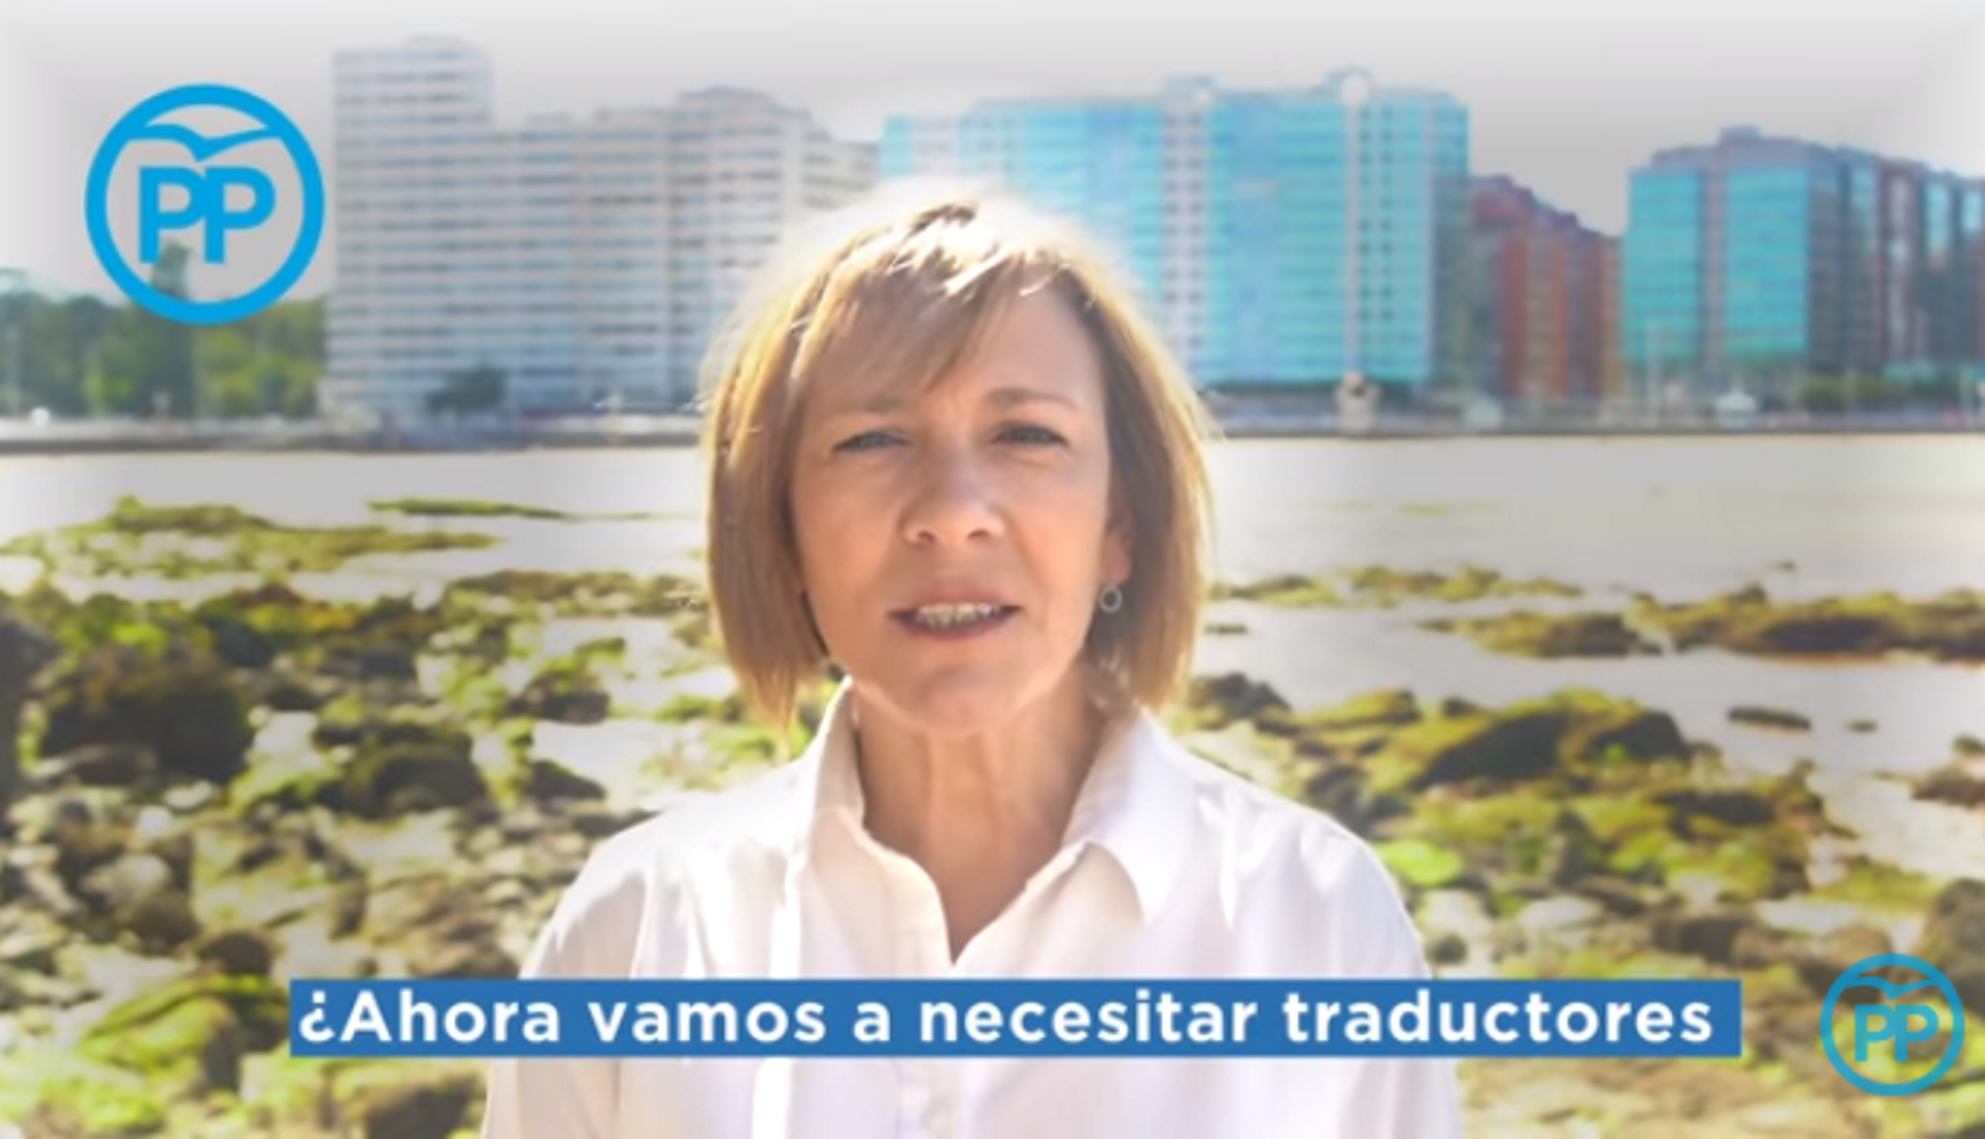 El ridículo vídeo del PP contra la oficialidad del asturiano